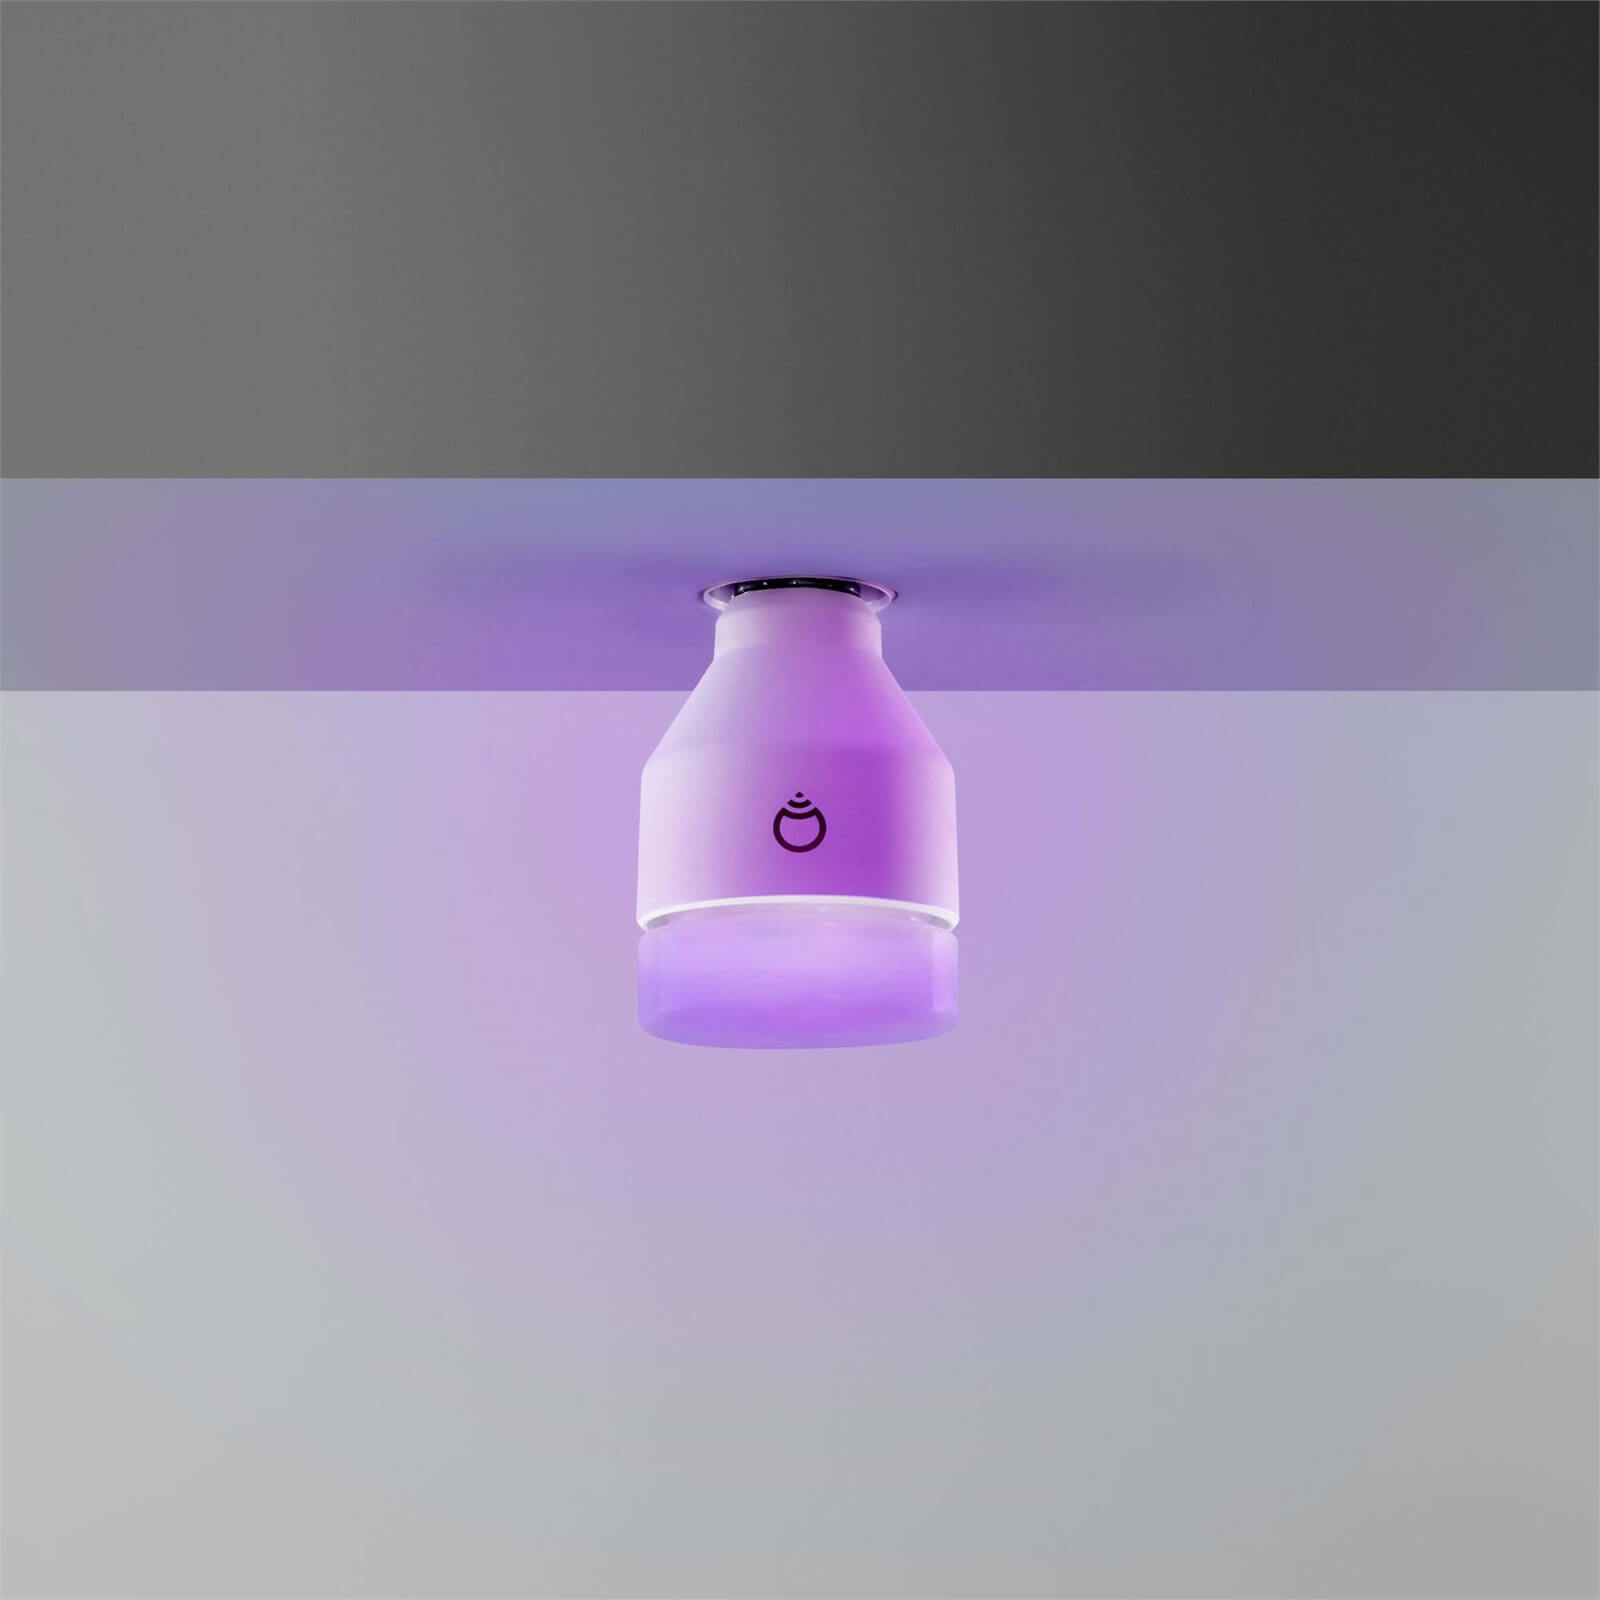 LIFX (B22) Wi-Fi Smart LED Light Bulb - Colour